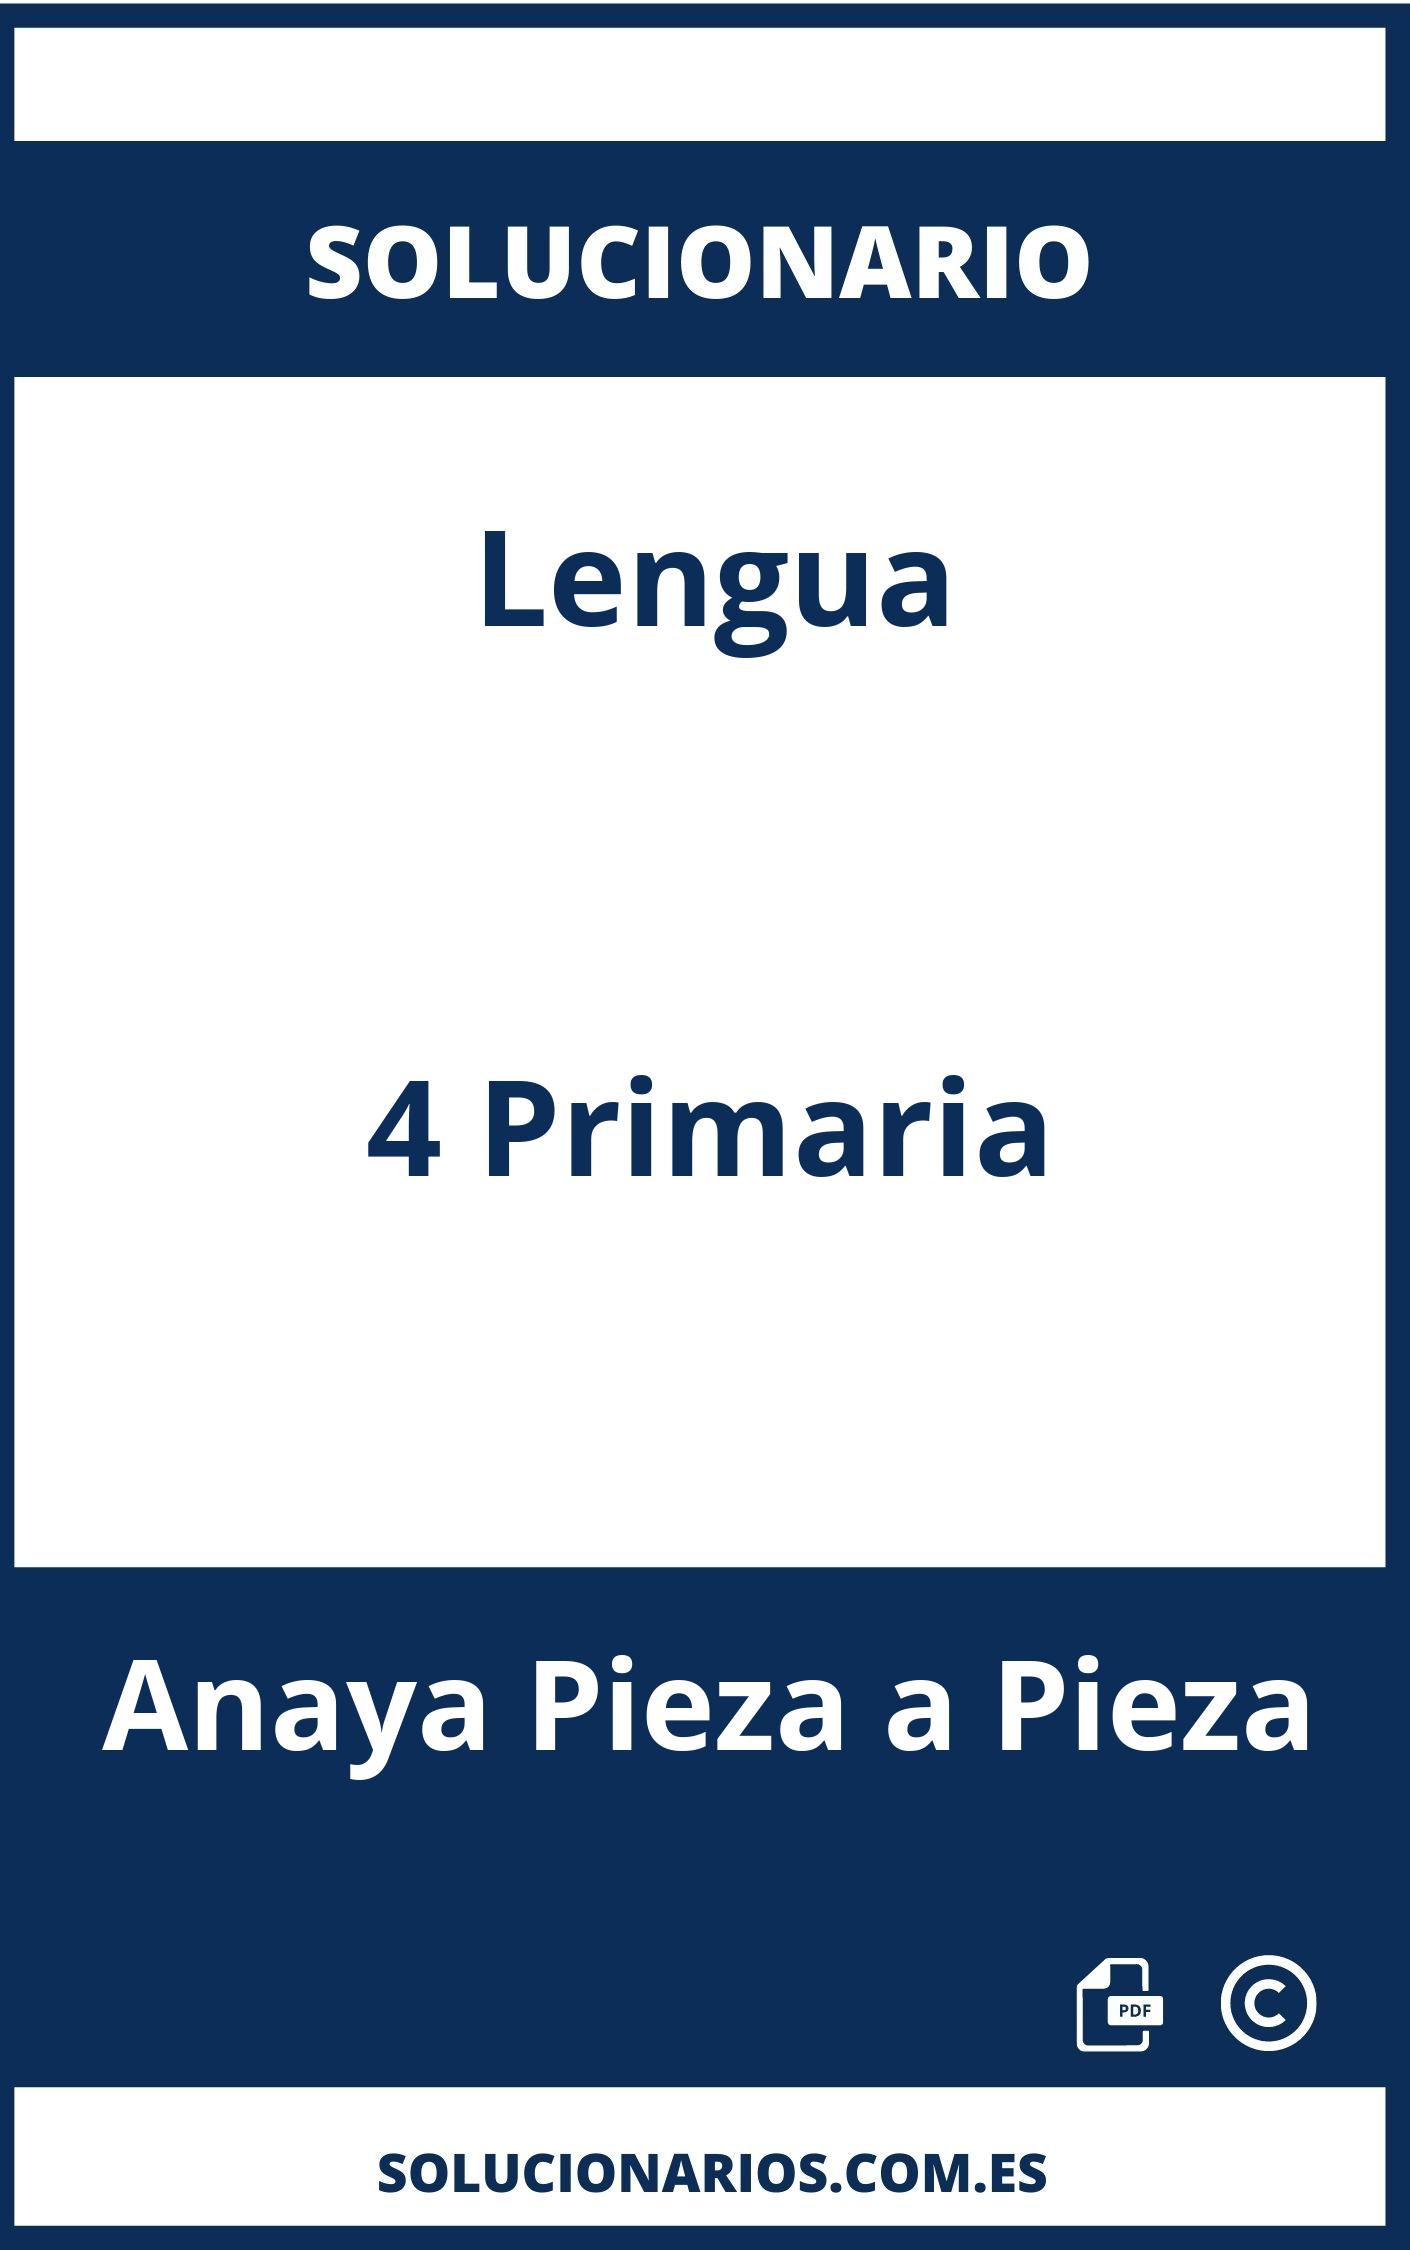 Solucionario Lengua 4 Primaria Anaya Pieza a Pieza